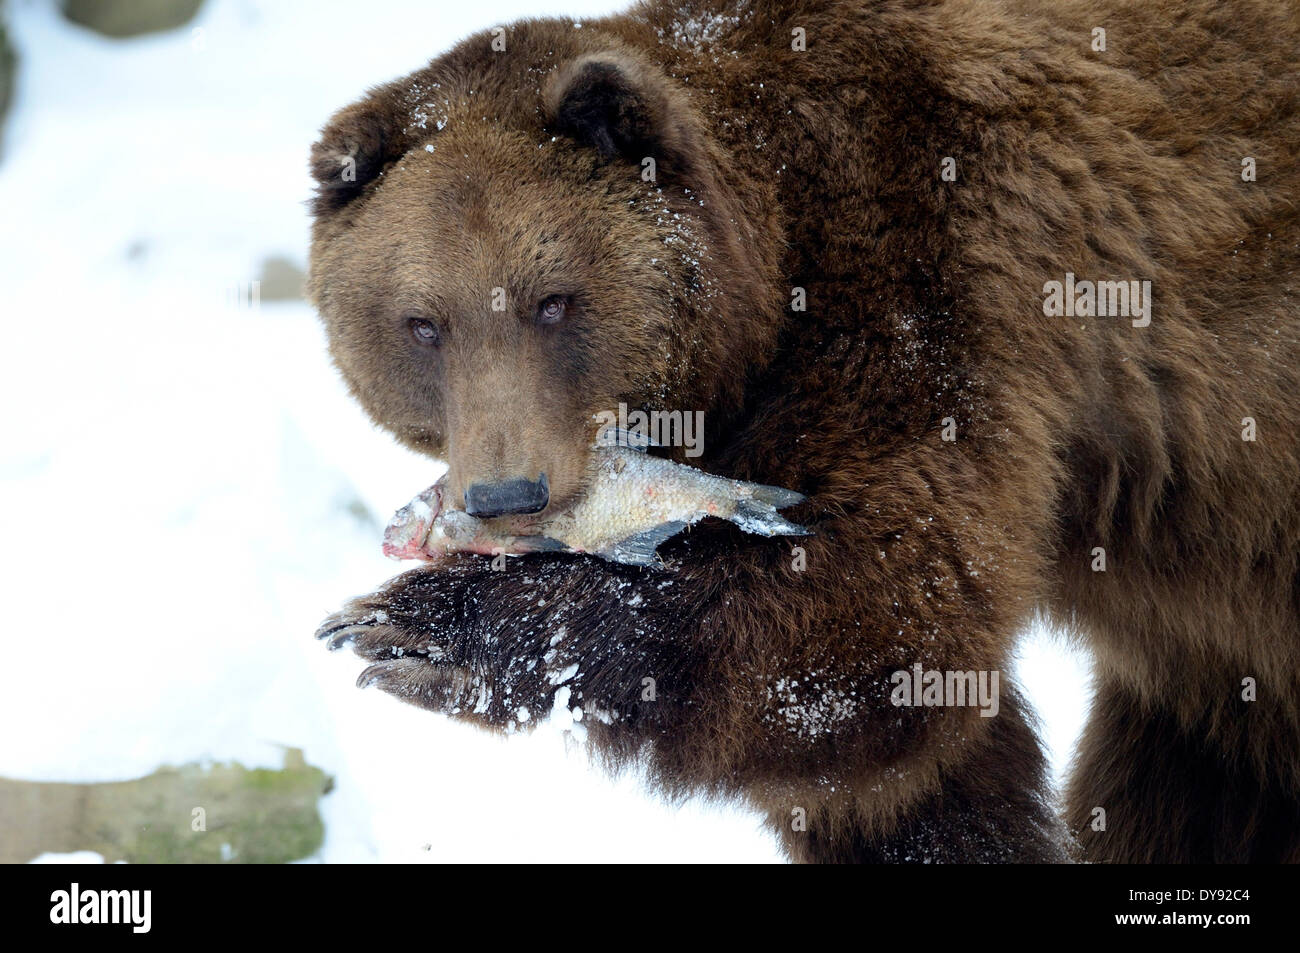 Brown bear, European bear, European brown bears, predator, Ursus arctos, bear, fish, snow, animal, animals, Germany, Europe, Stock Photo